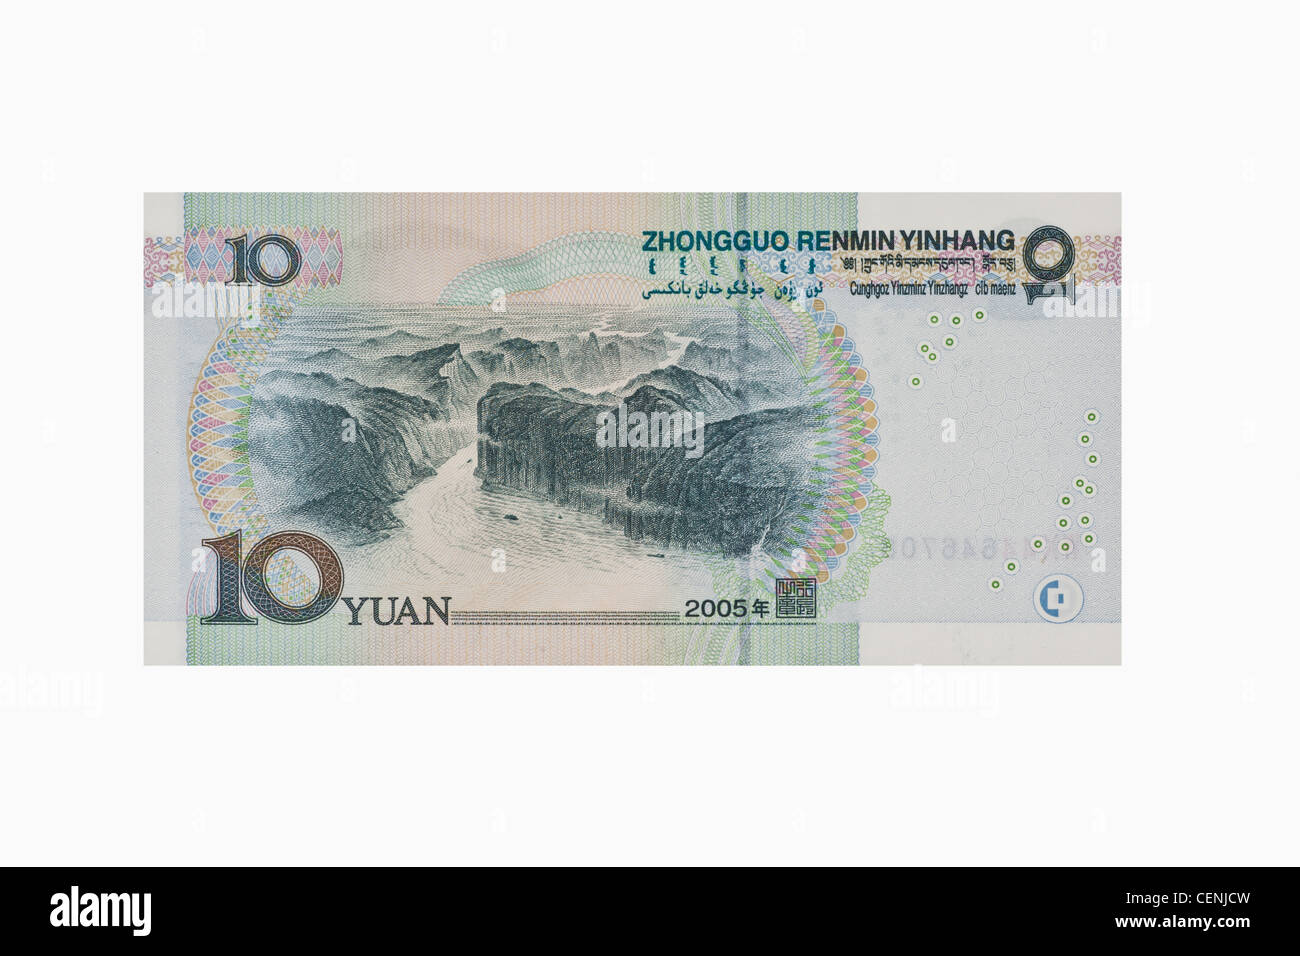 Lato posteriore del 10 yuan bill. Il renminbi, la valuta cinese, è stato introdotto nel 1949 dopo la fondazione della Repubblica popolare cinese. Foto Stock